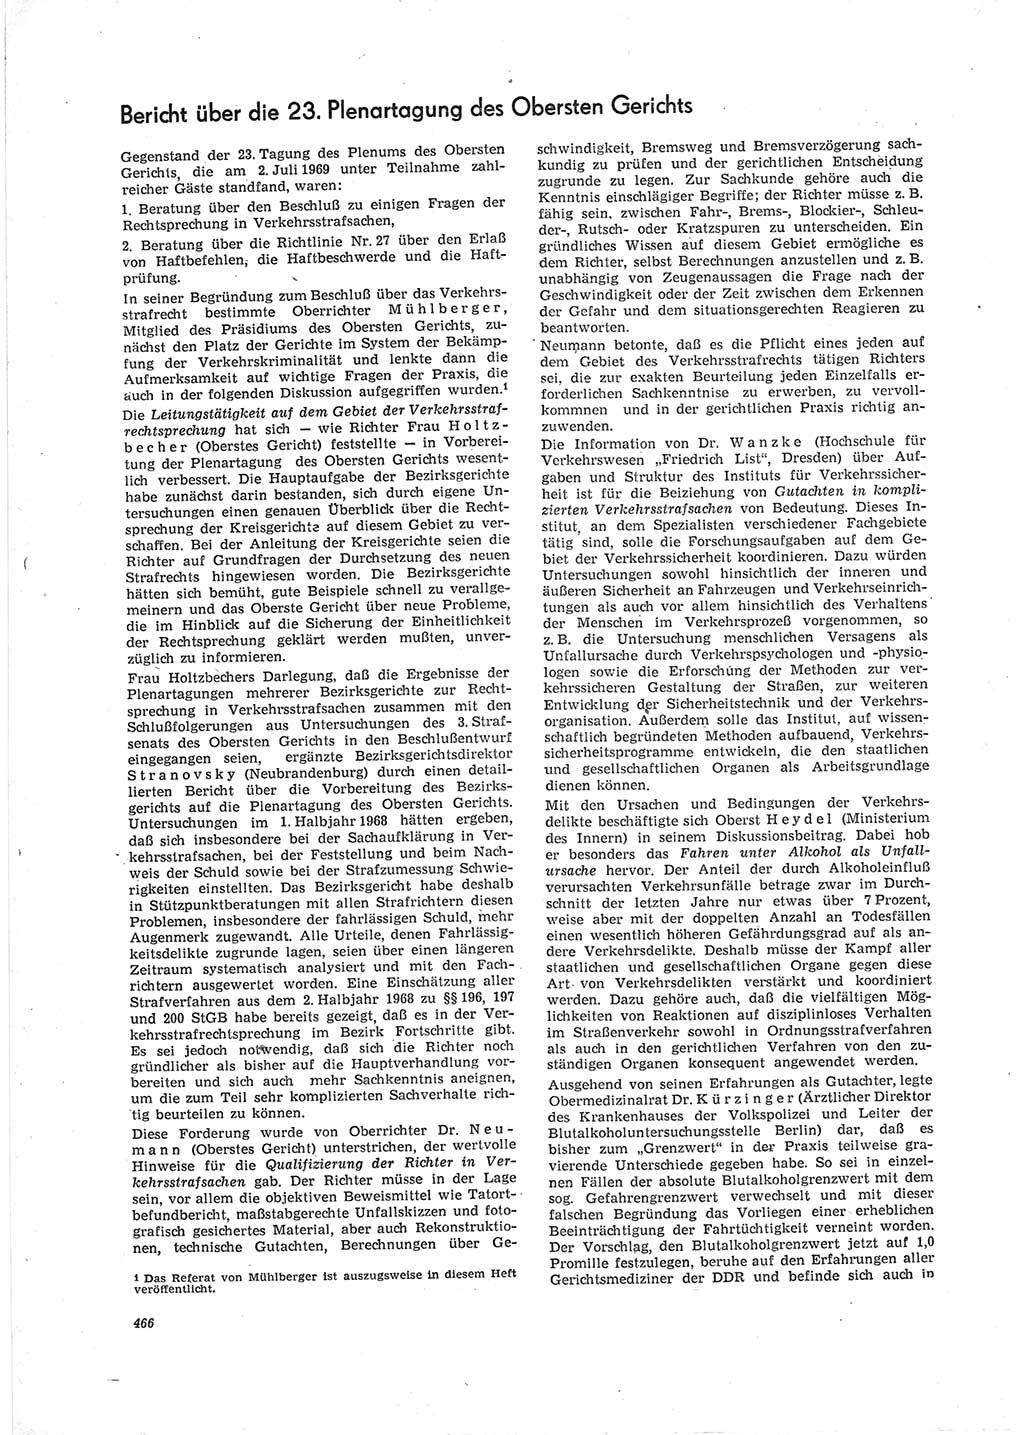 Neue Justiz (NJ), Zeitschrift für Recht und Rechtswissenschaft [Deutsche Demokratische Republik (DDR)], 23. Jahrgang 1969, Seite 466 (NJ DDR 1969, S. 466)